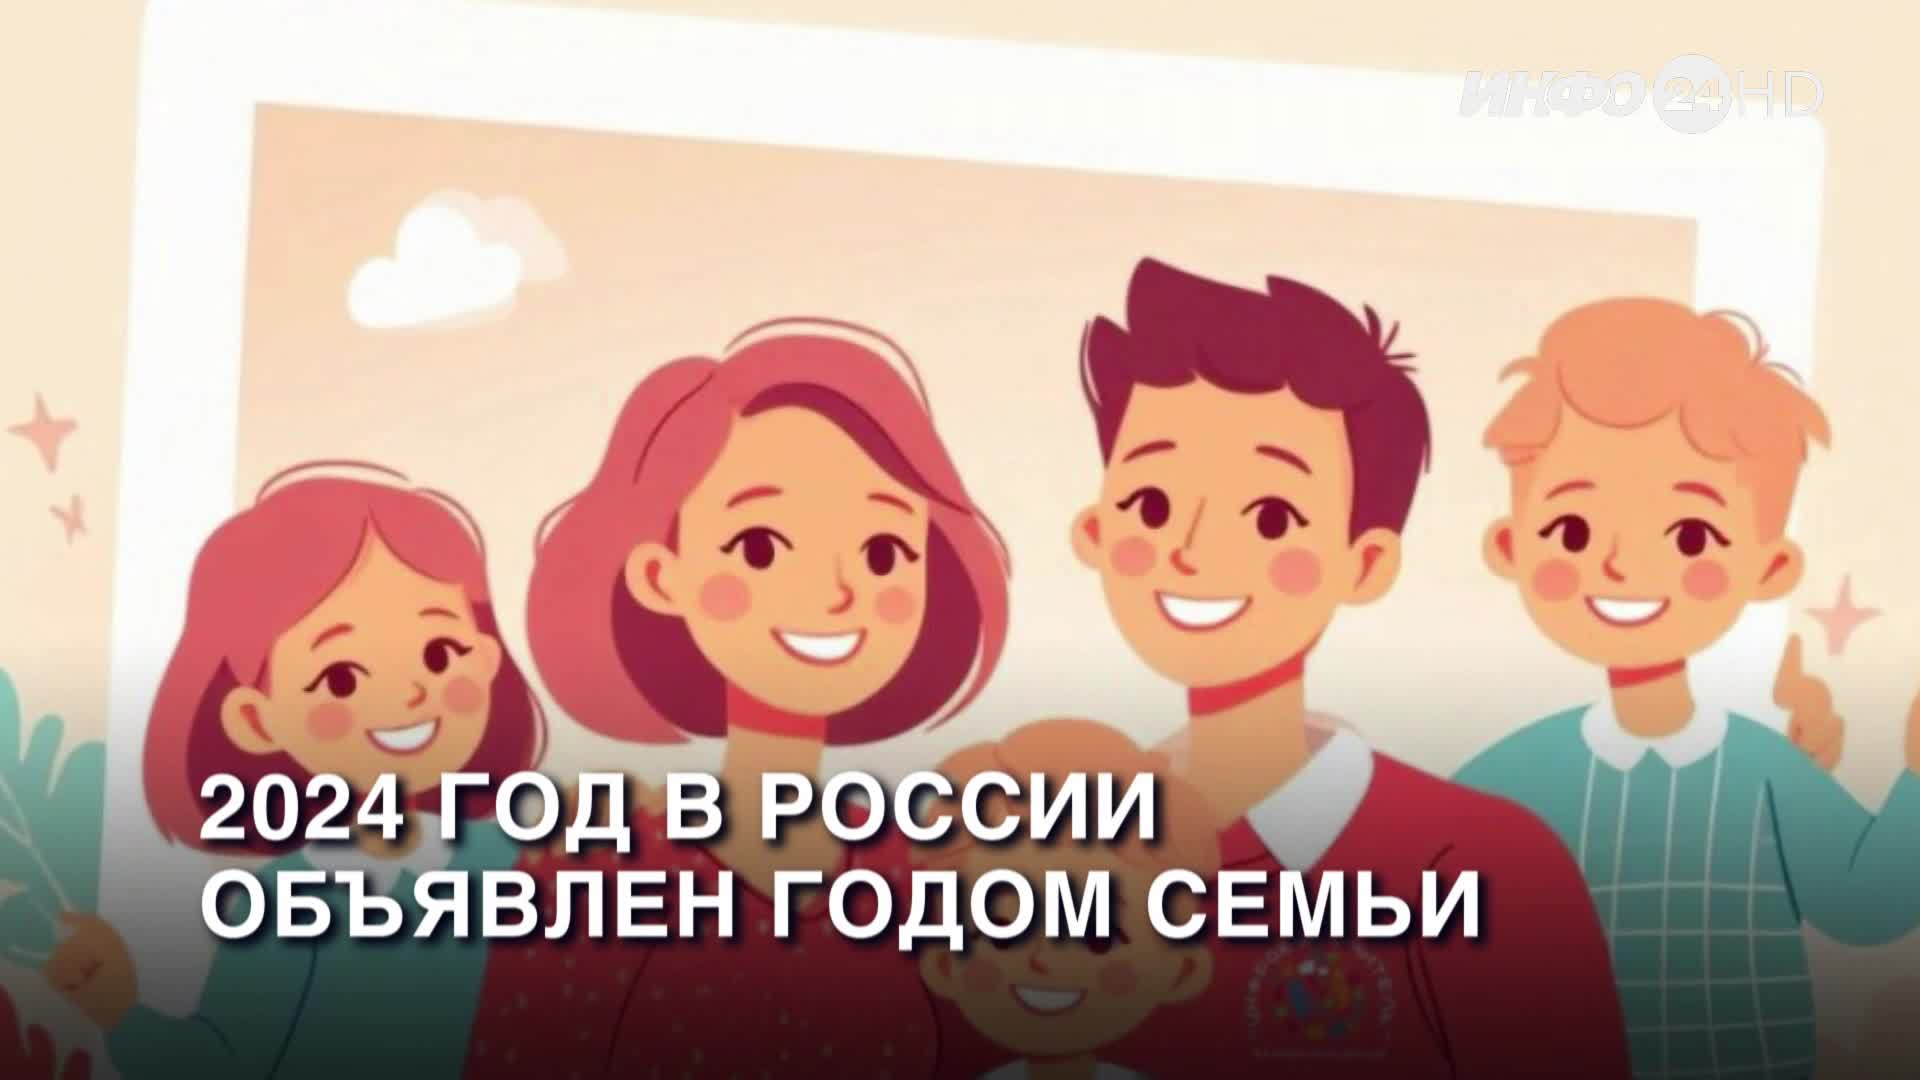 2024 год назначен Годом семьи в России.